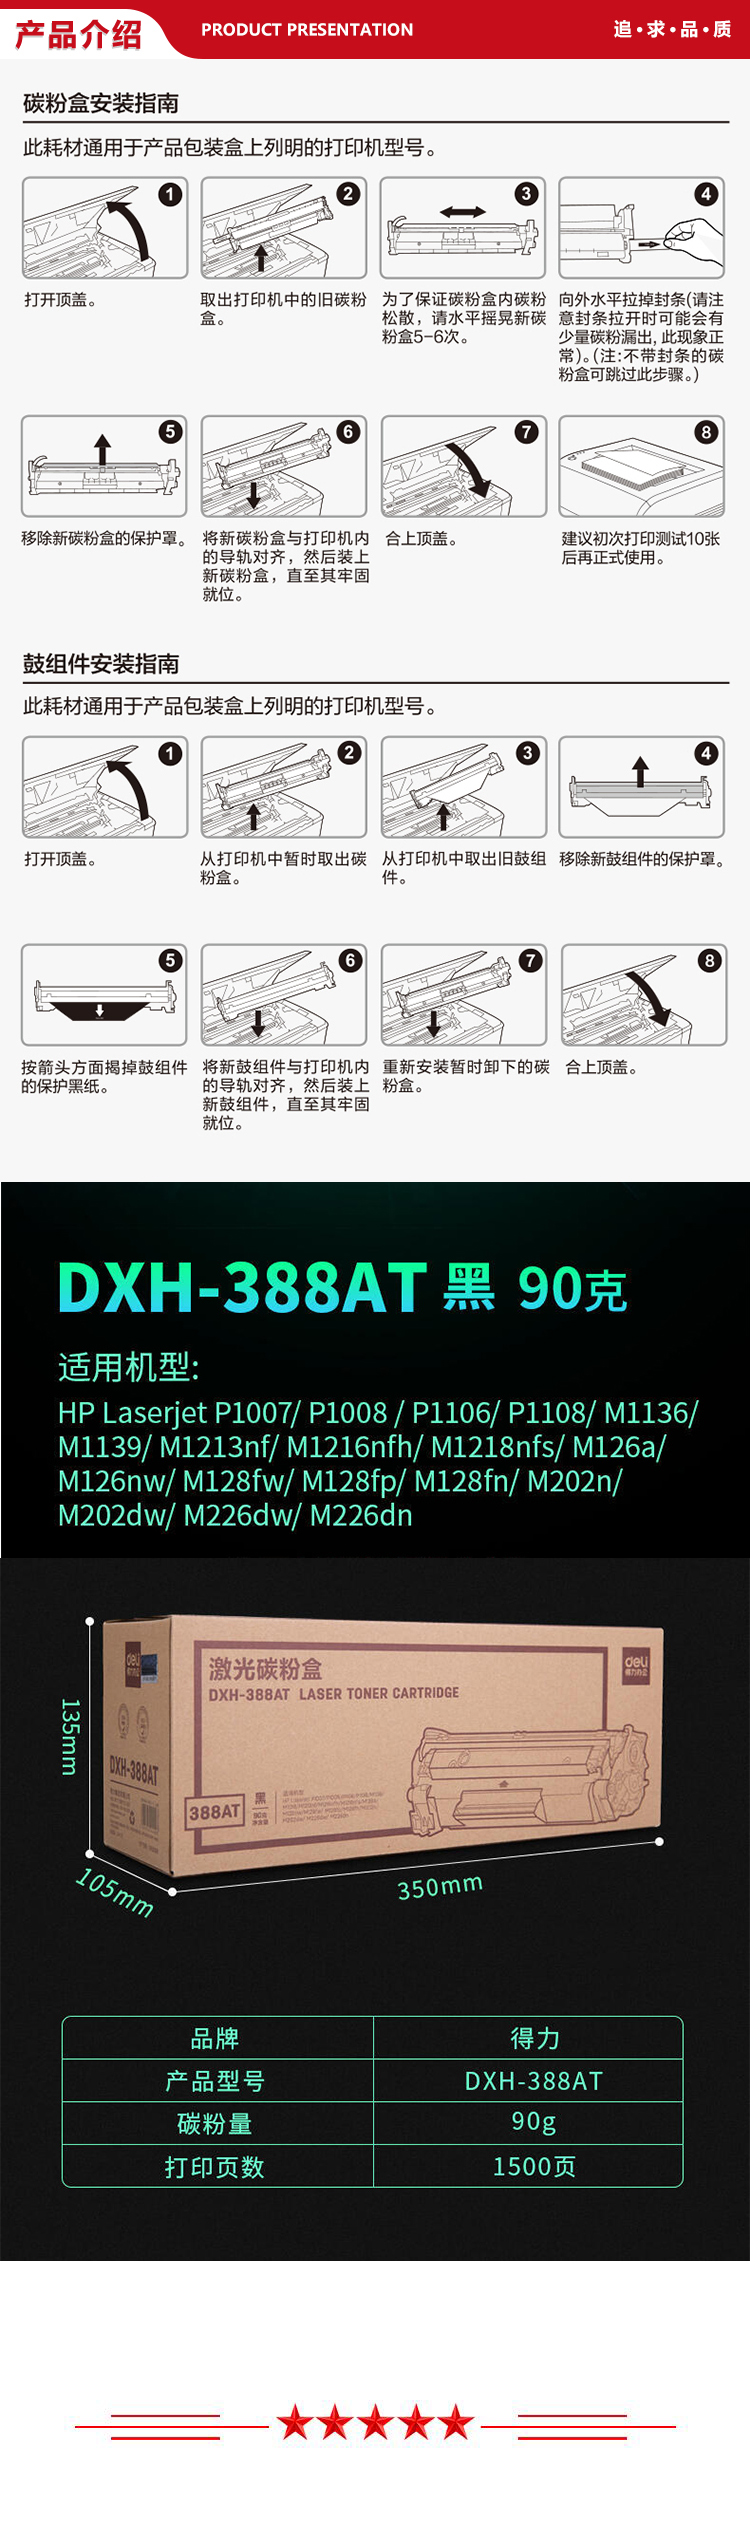 DXH-388AT-.jpg